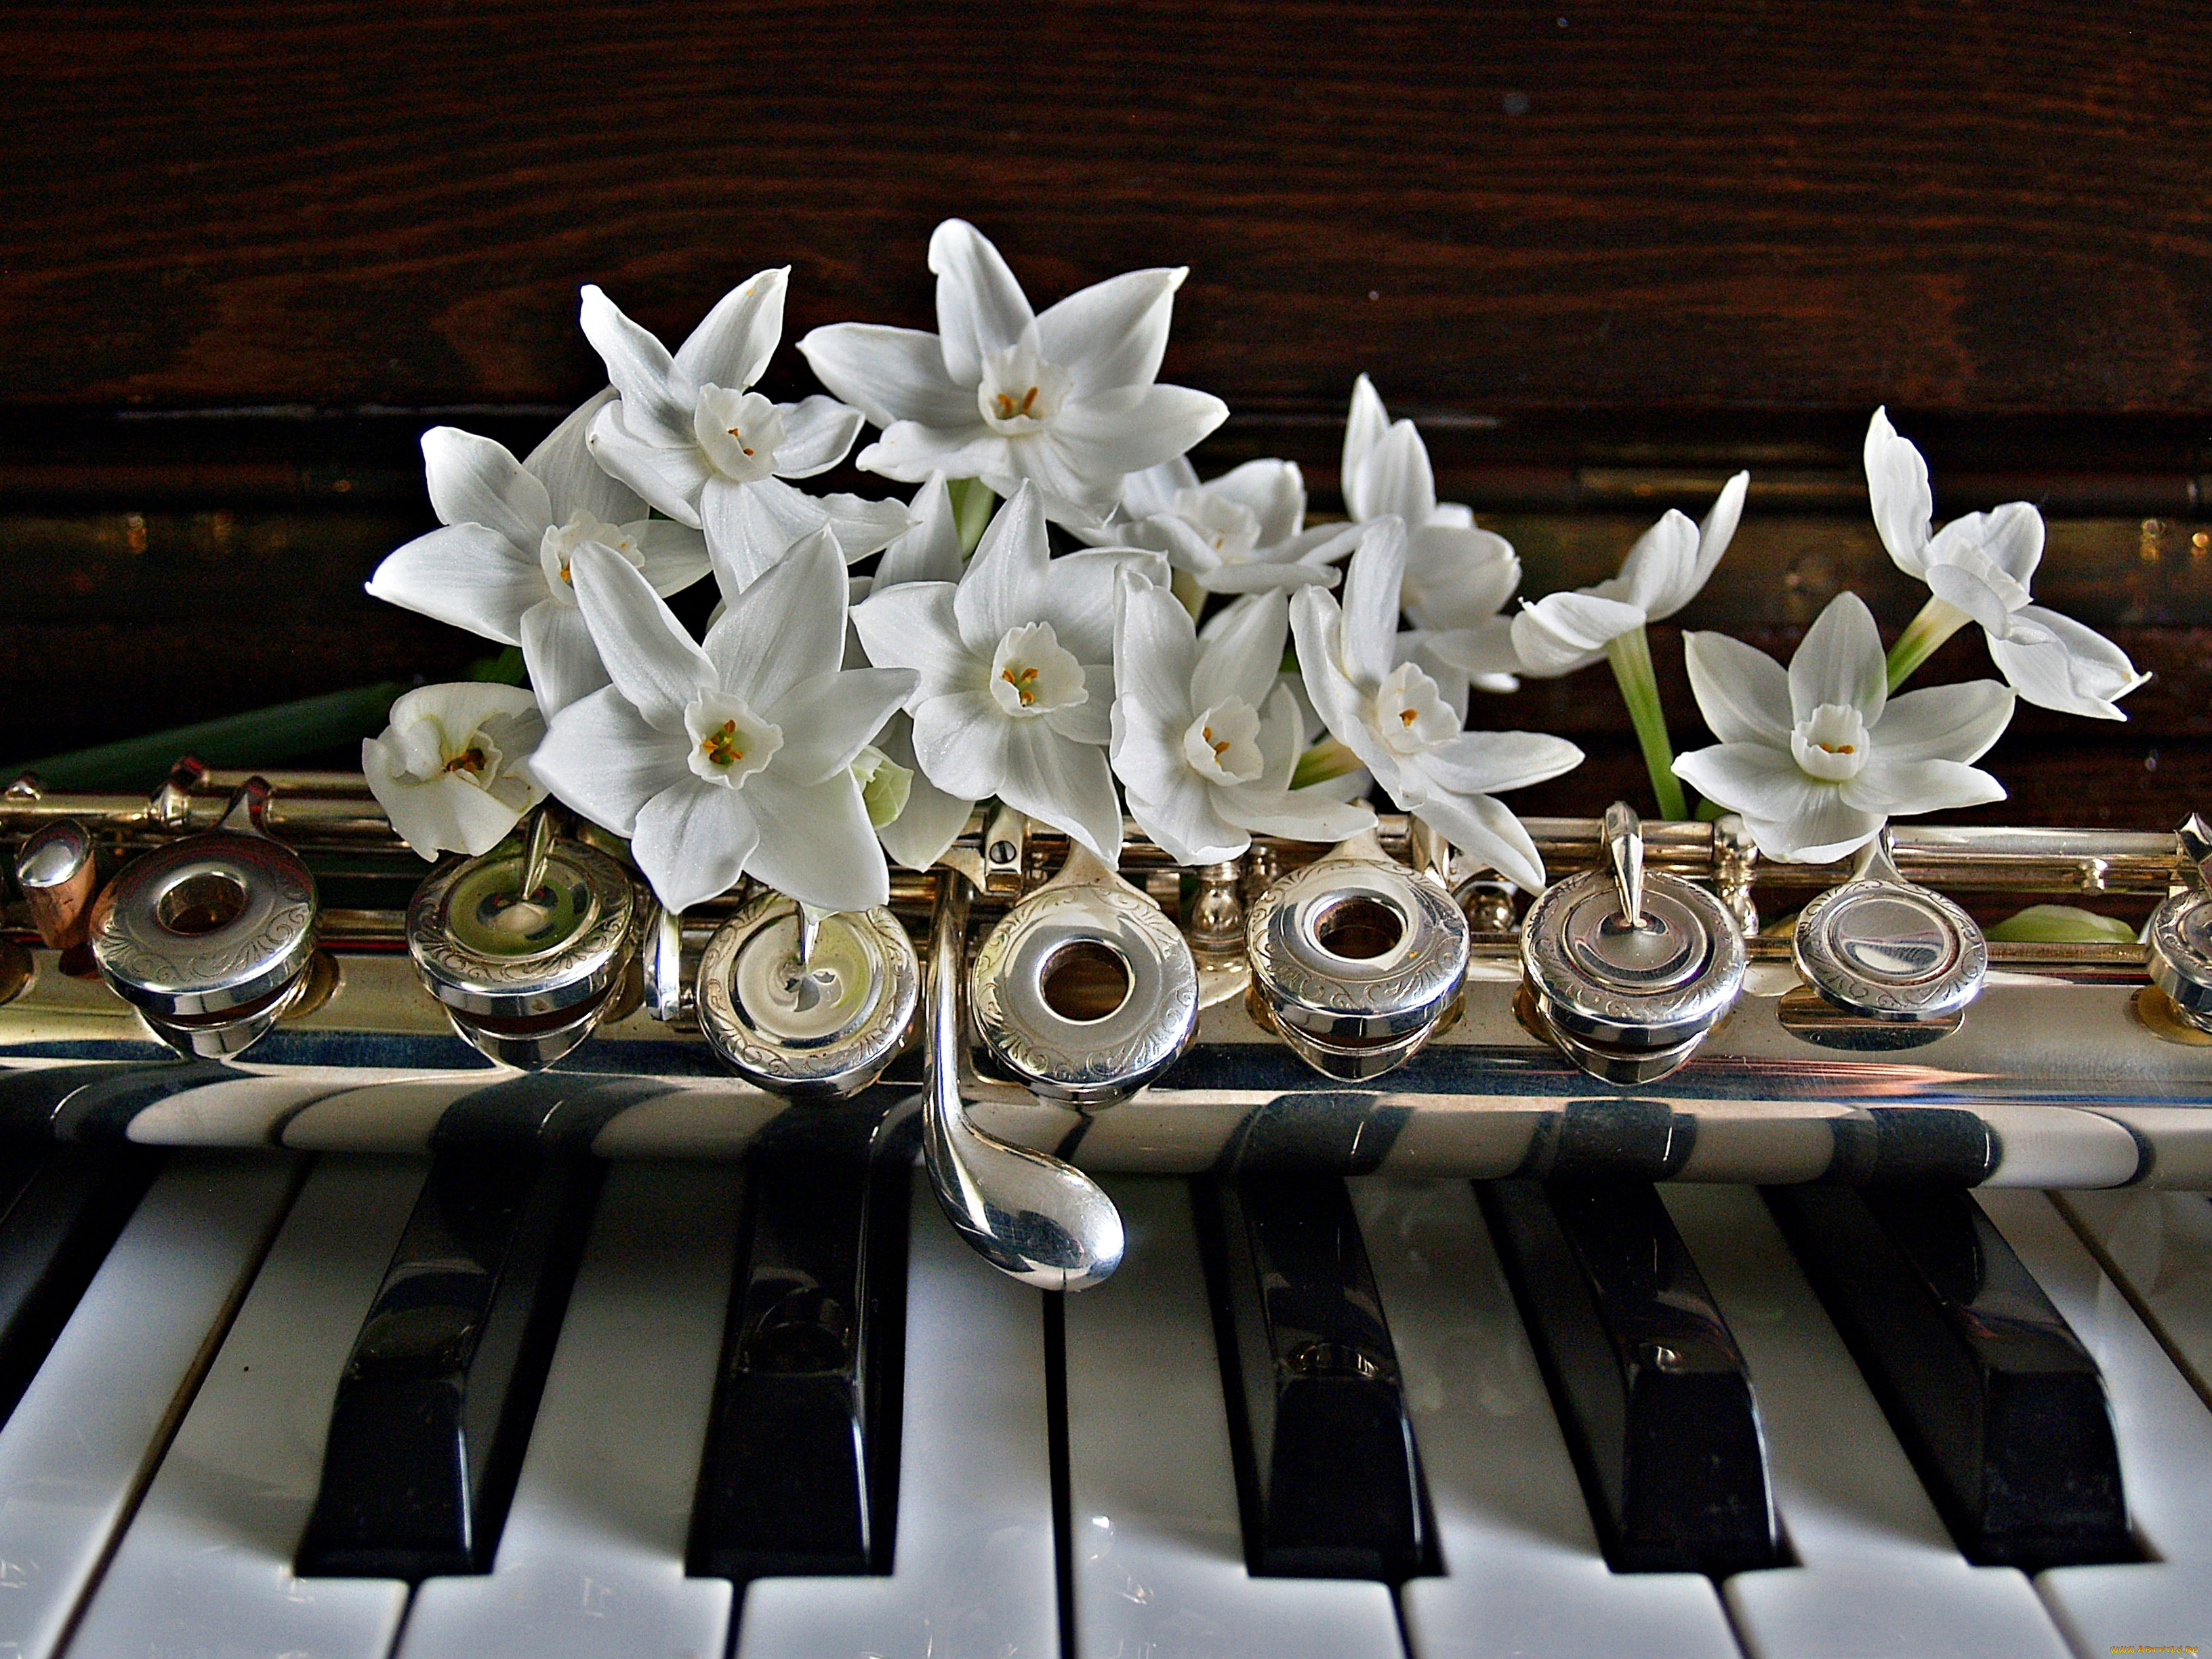 Благородный музыка музыка. Музыкальные инструменты и цветы. Музыкальный букет цветов. Цветы для музыканта. Цветы на рояле.